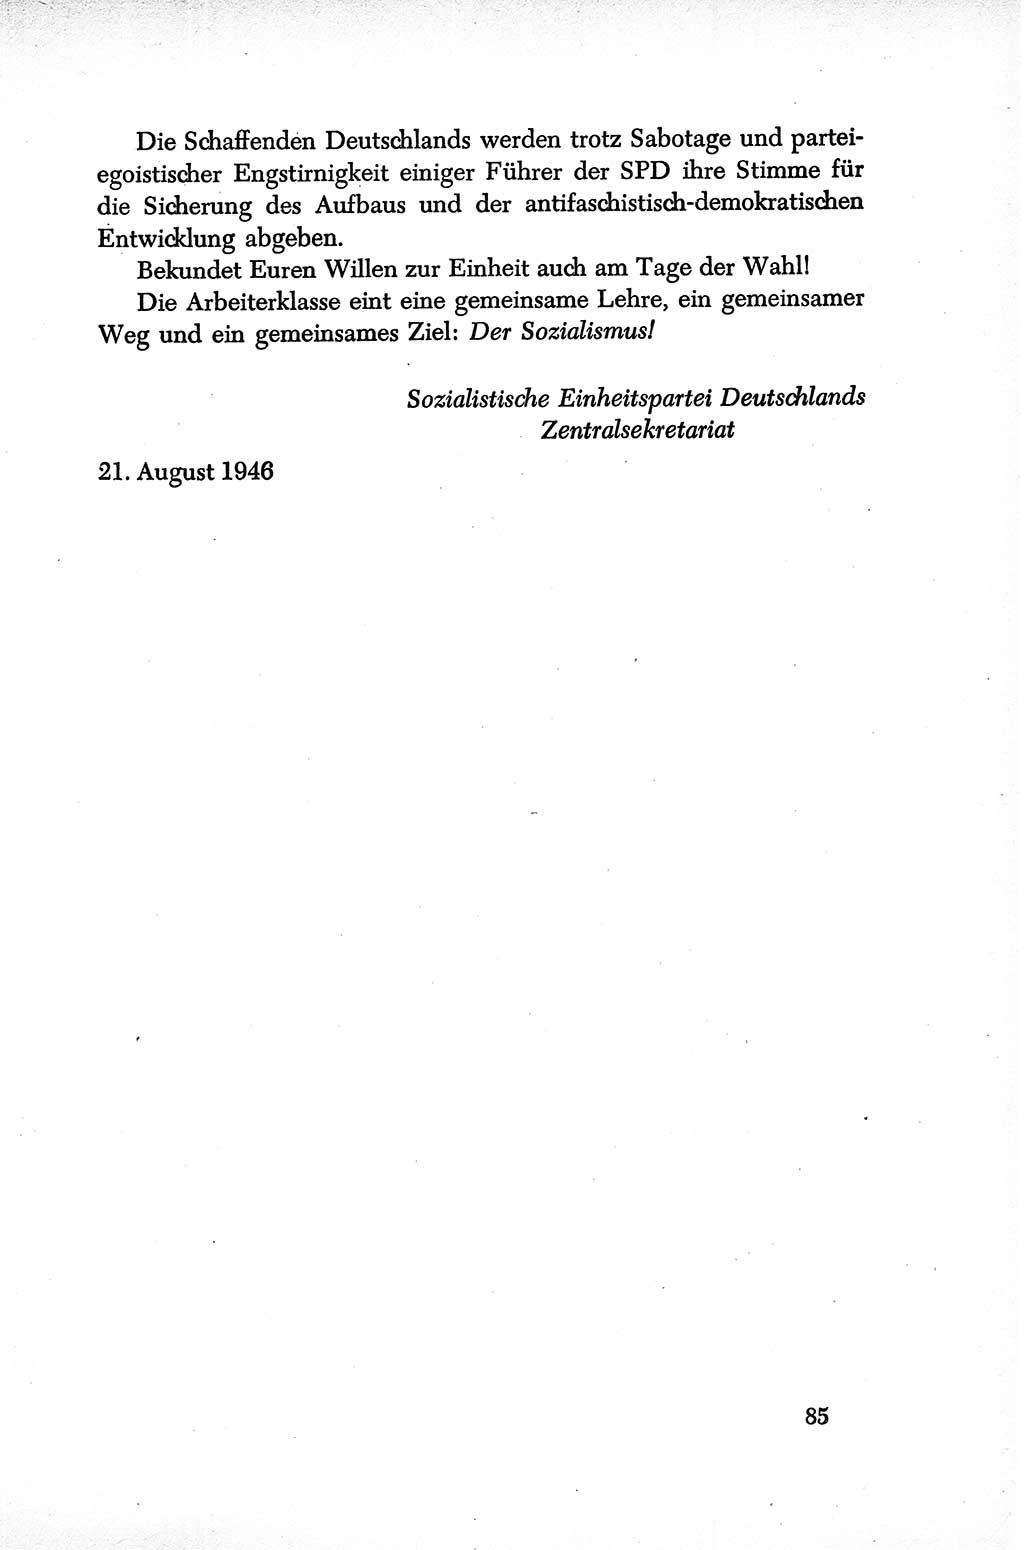 Dokumente der Sozialistischen Einheitspartei Deutschlands (SED) [Sowjetische Besatzungszone (SBZ) Deutschlands] 1946-1948, Seite 85 (Dok. SED SBZ Dtl. 1946-1948, S. 85)